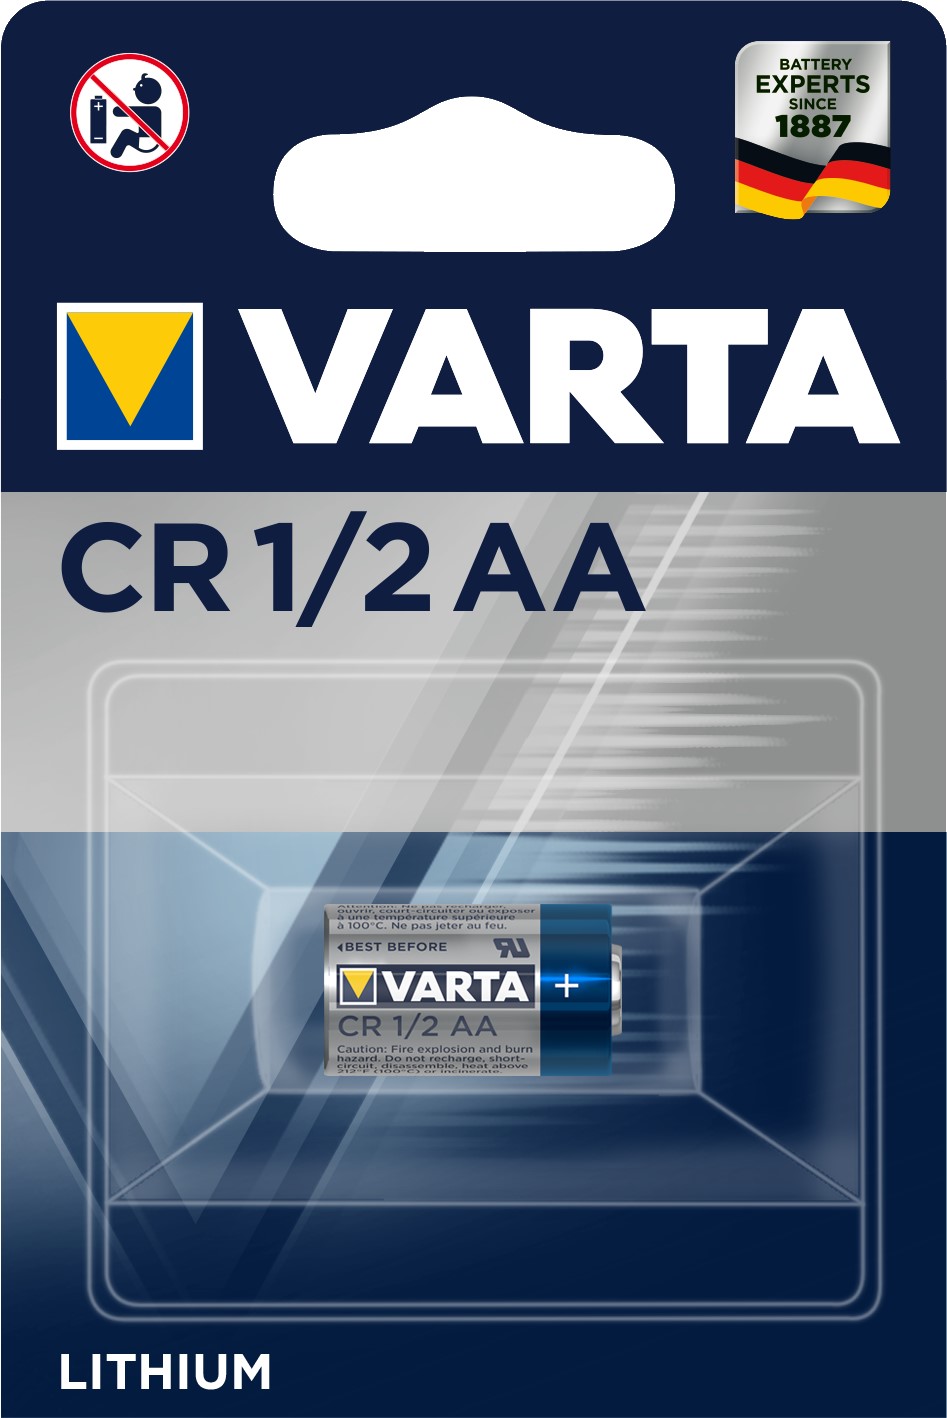 VARTA 1/2 AA x1 Pile lithium 3V VARTA